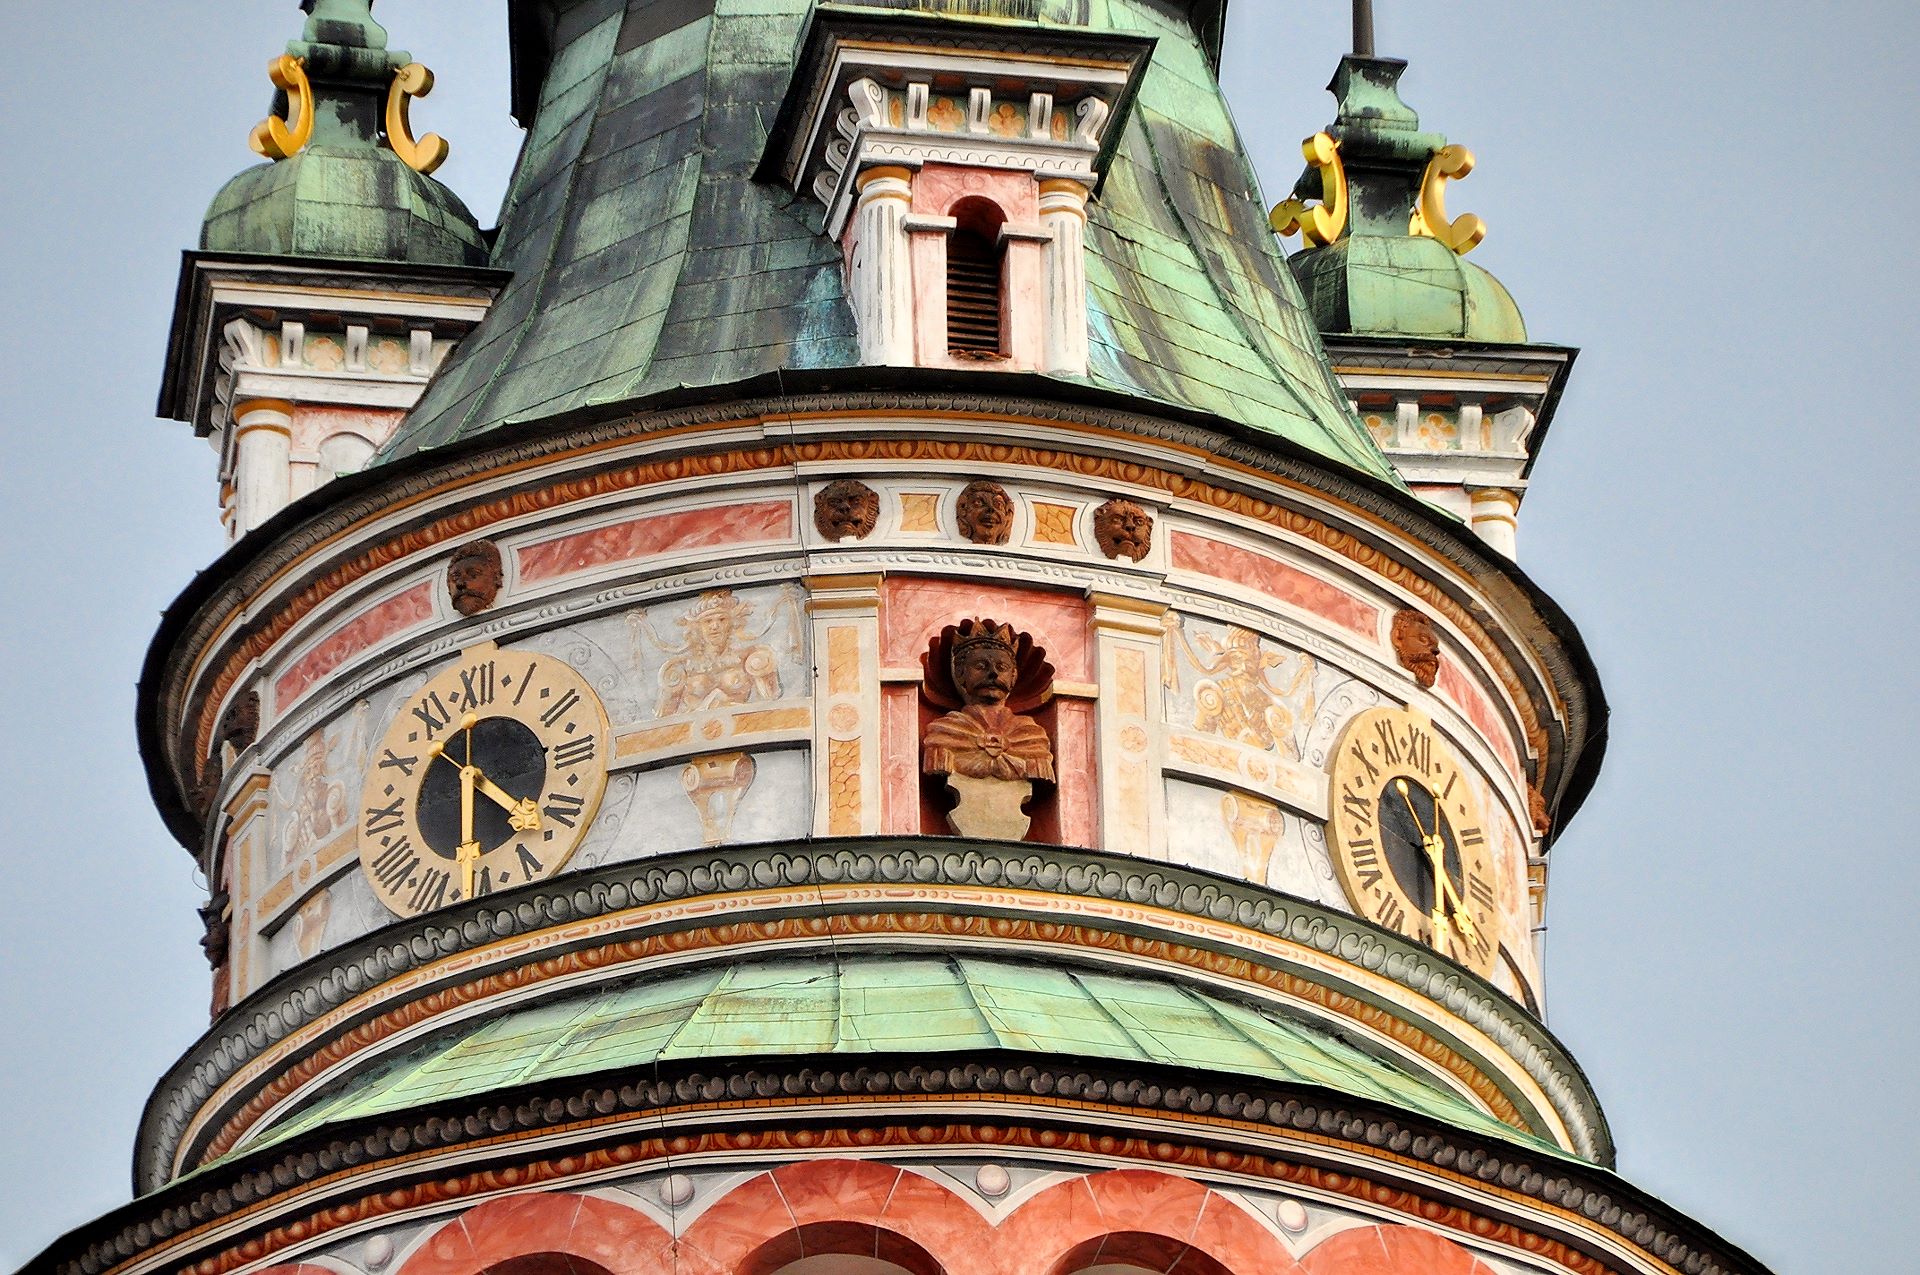 Markantes Wahrzeichen der Burg von Krumlov ist der große mittelalterliche Turm, später mit Renaissanceschmuck umgestaltet